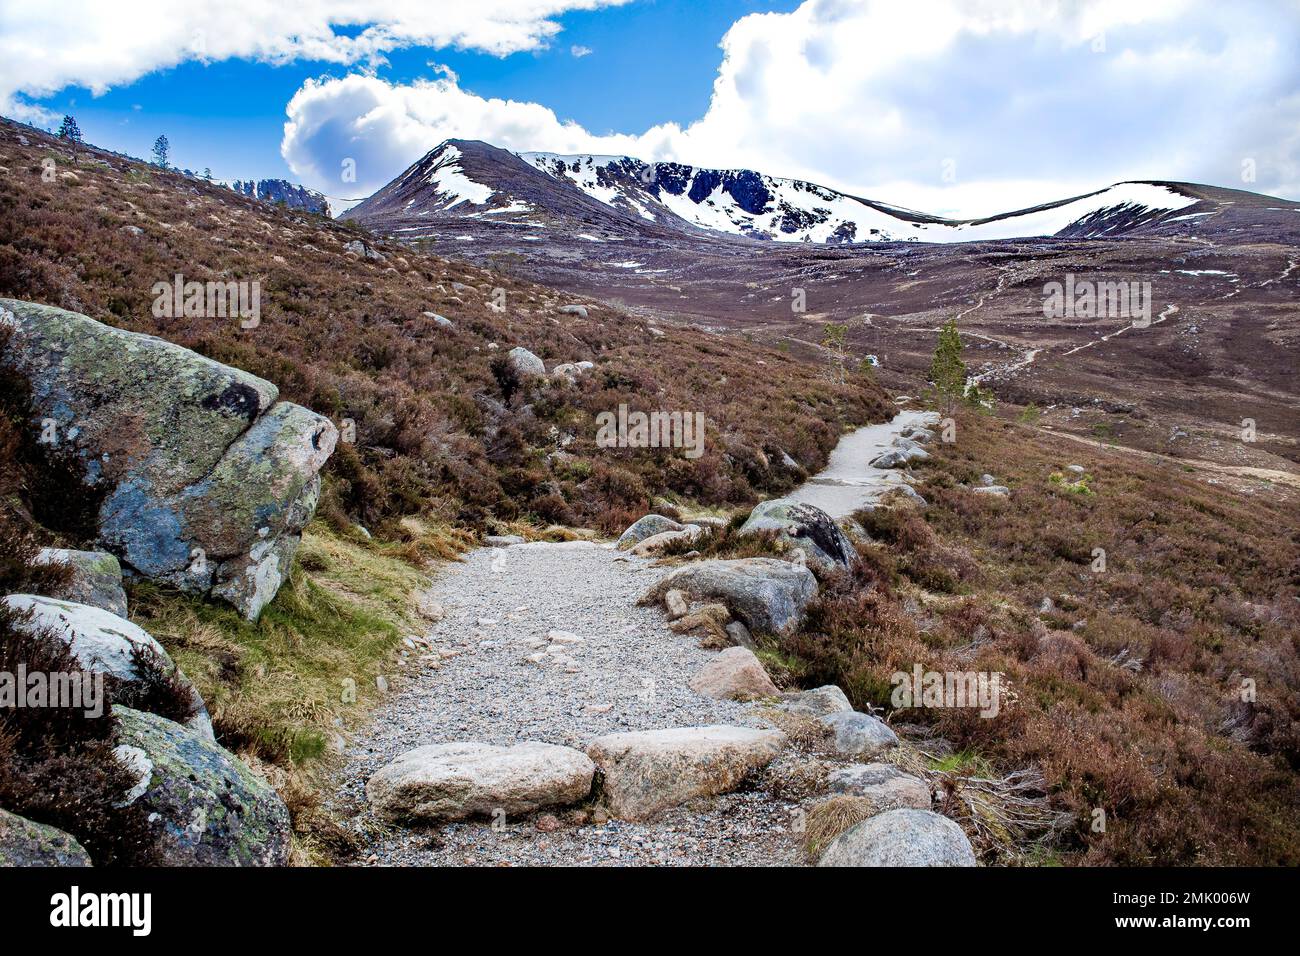 Sentier de randonnée courbé, parc national de Cairngorms, Scottish Highlands, Écosse, zone populaire de randonnée et de ski. Sommets enneigés, ciel bleu, rochers. Banque D'Images